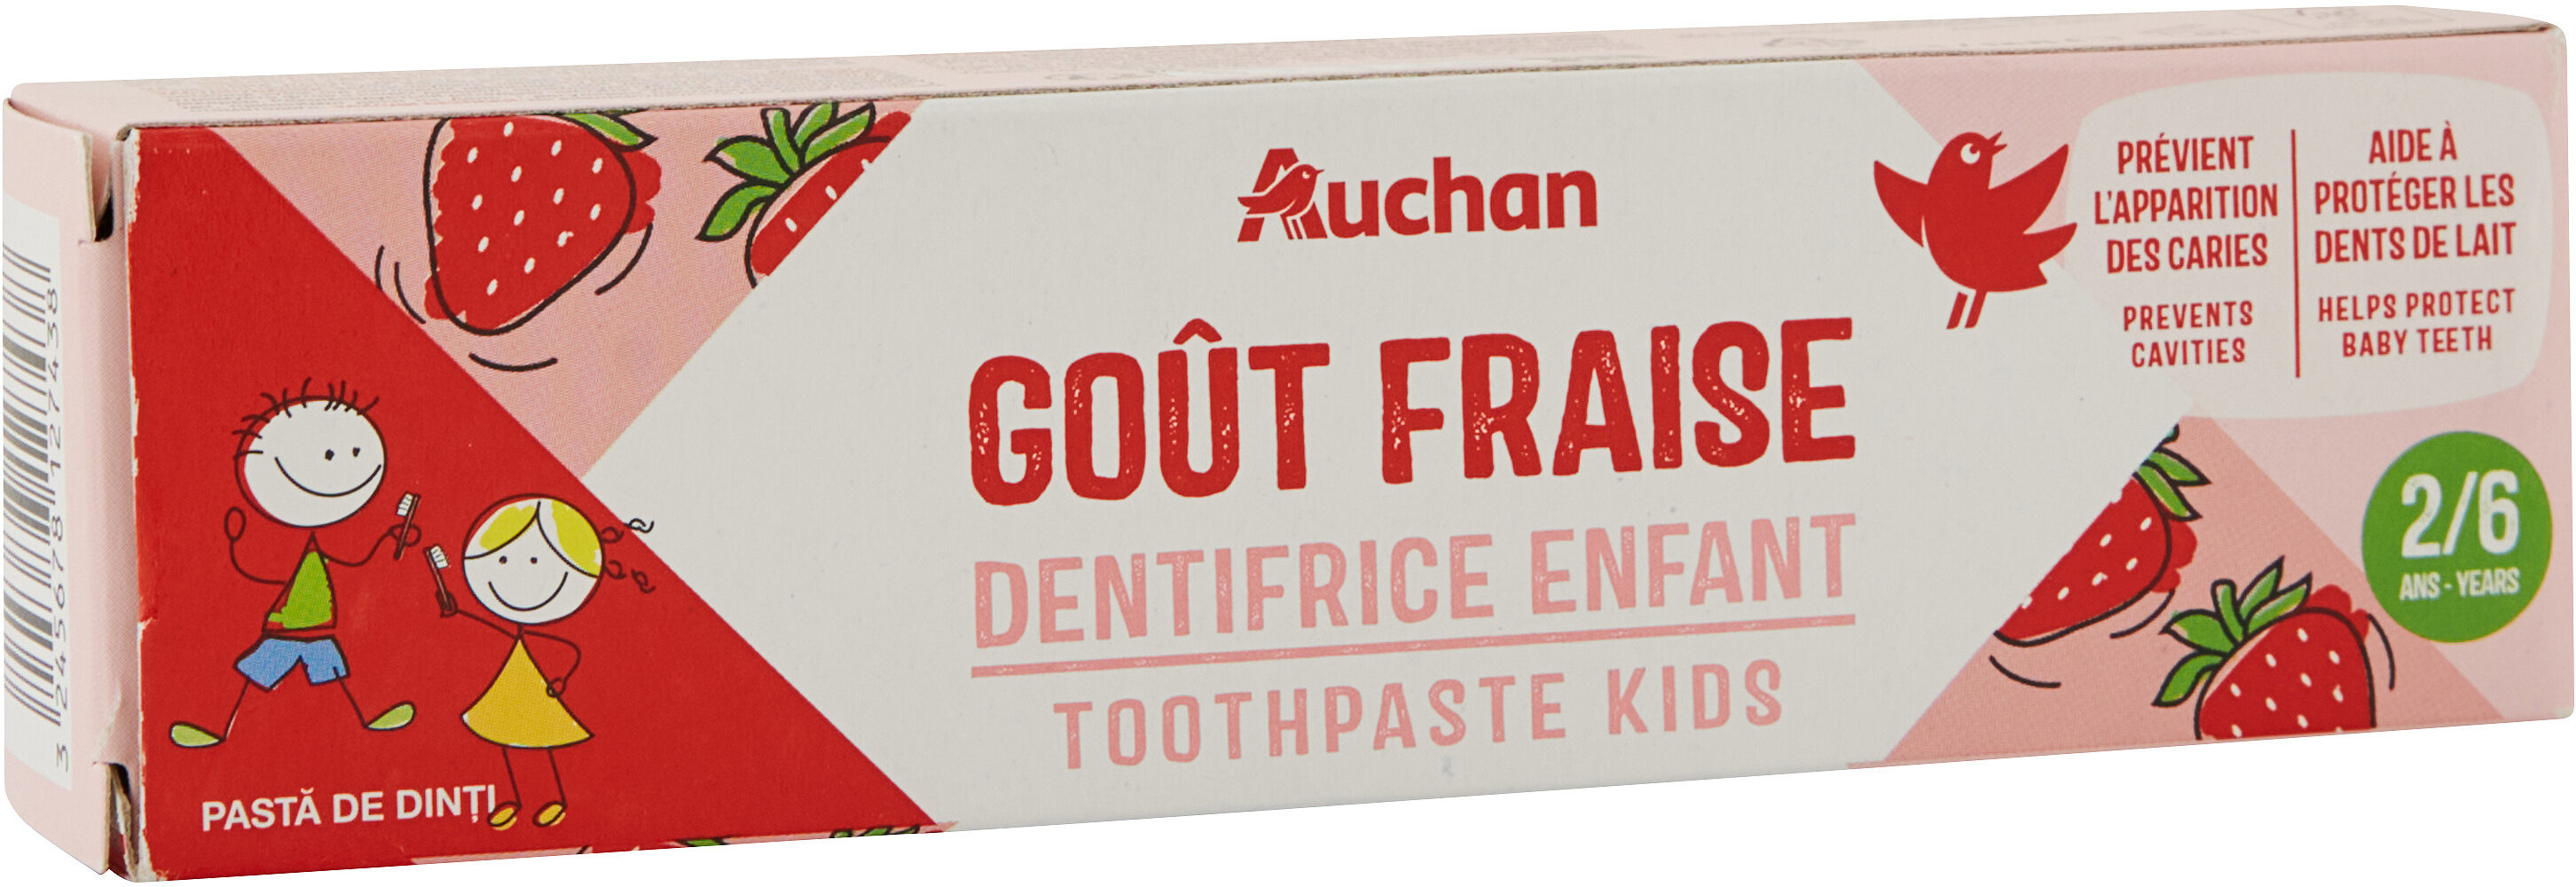 Auchan kids dentifrice fraise tube 2 + - 50ml - Produto - fr